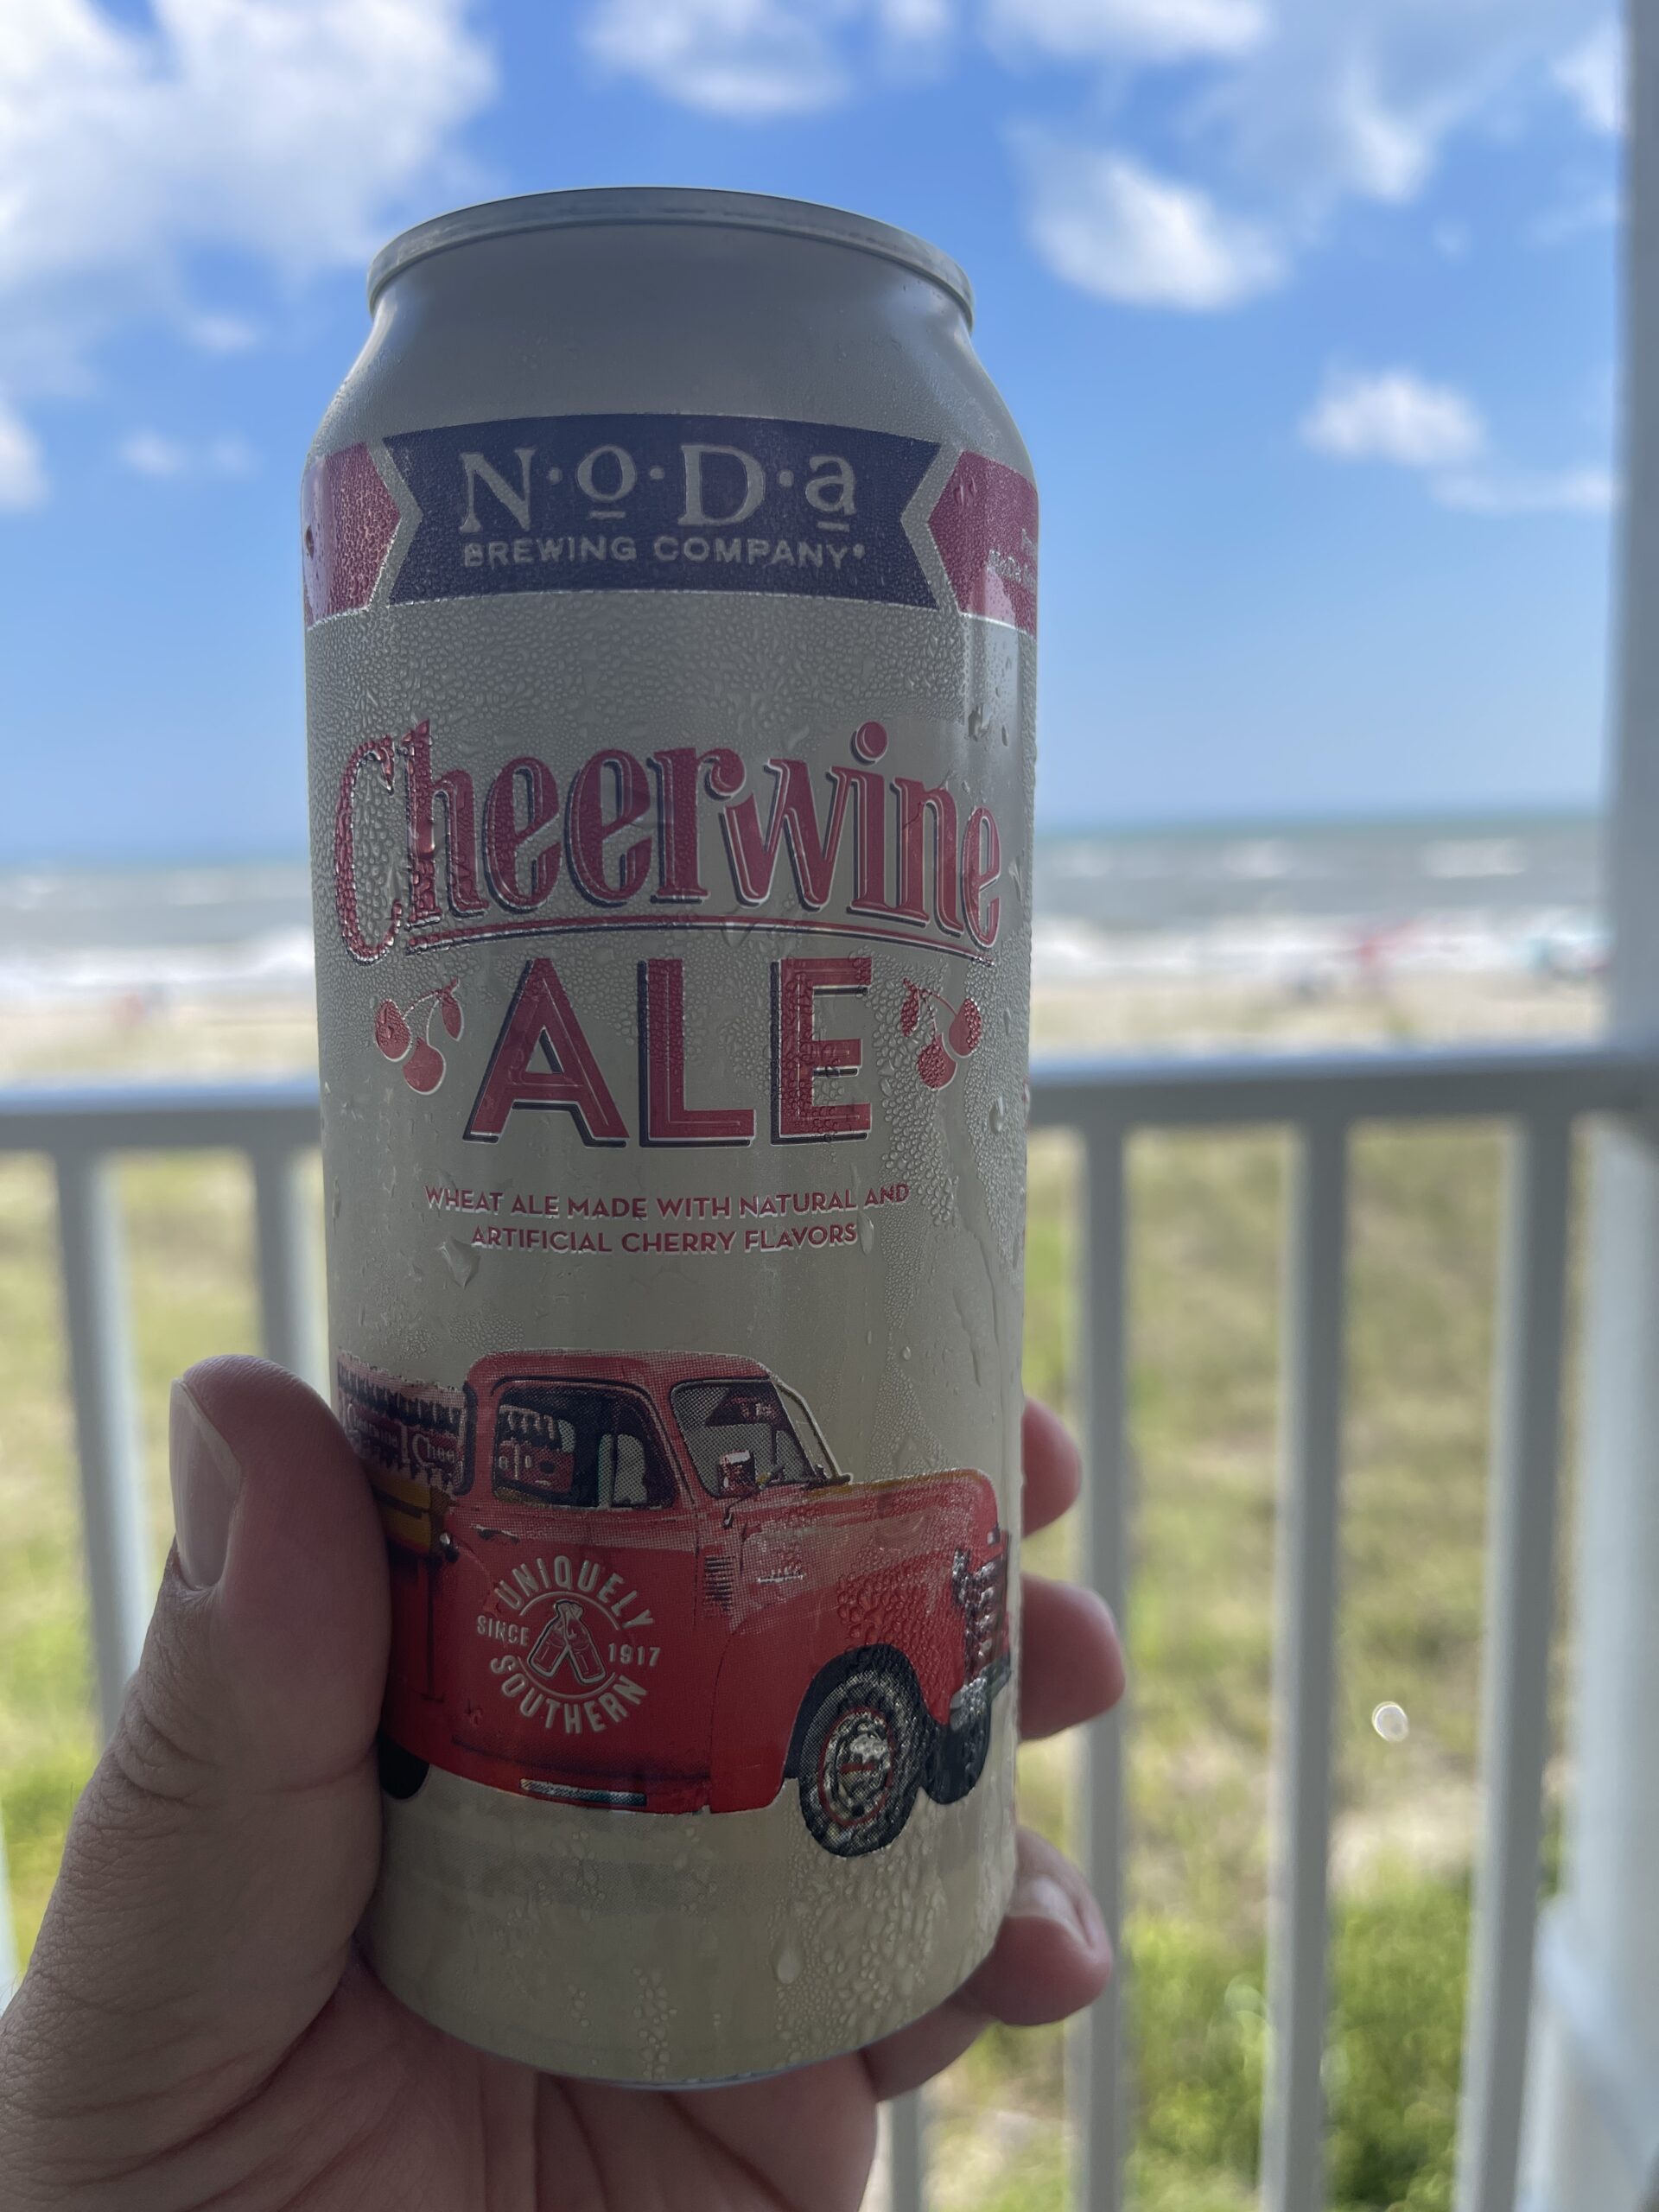 Cheerwine Ale, NoDa Brewing Company